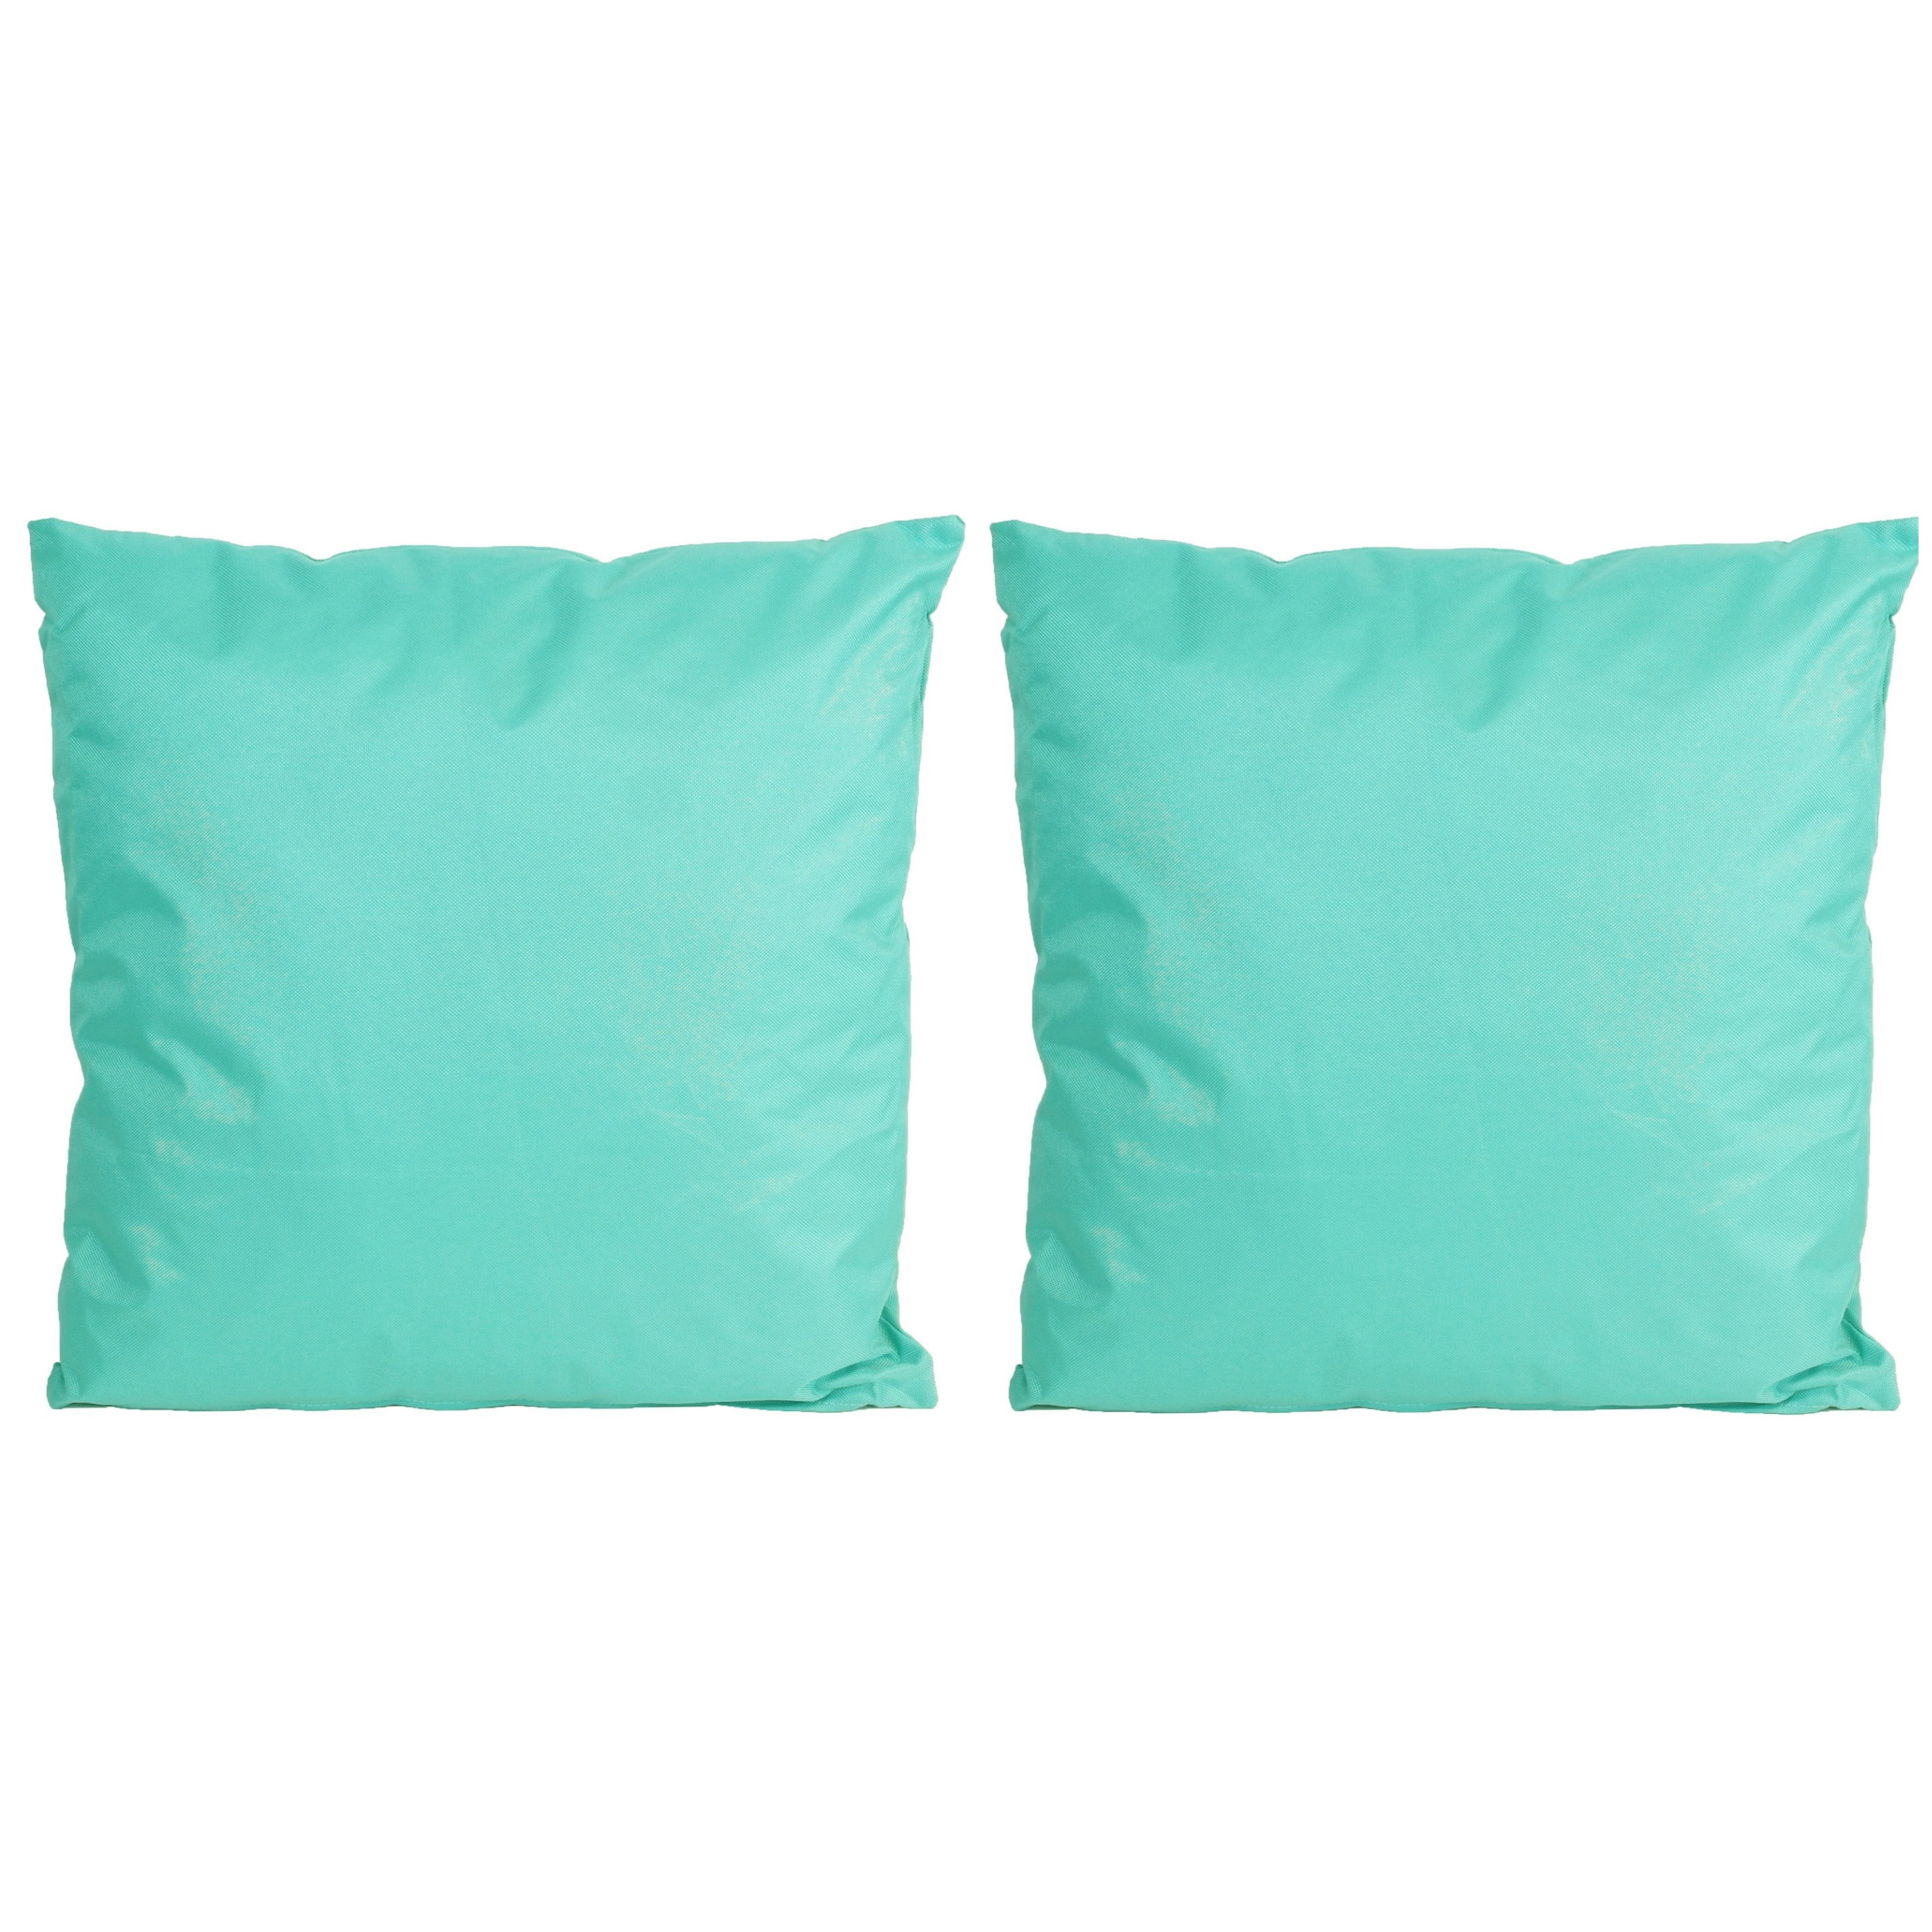 8x Bank-sier kussens voor binnen en buiten in de kleur aqua blauw 45 x 45 cm